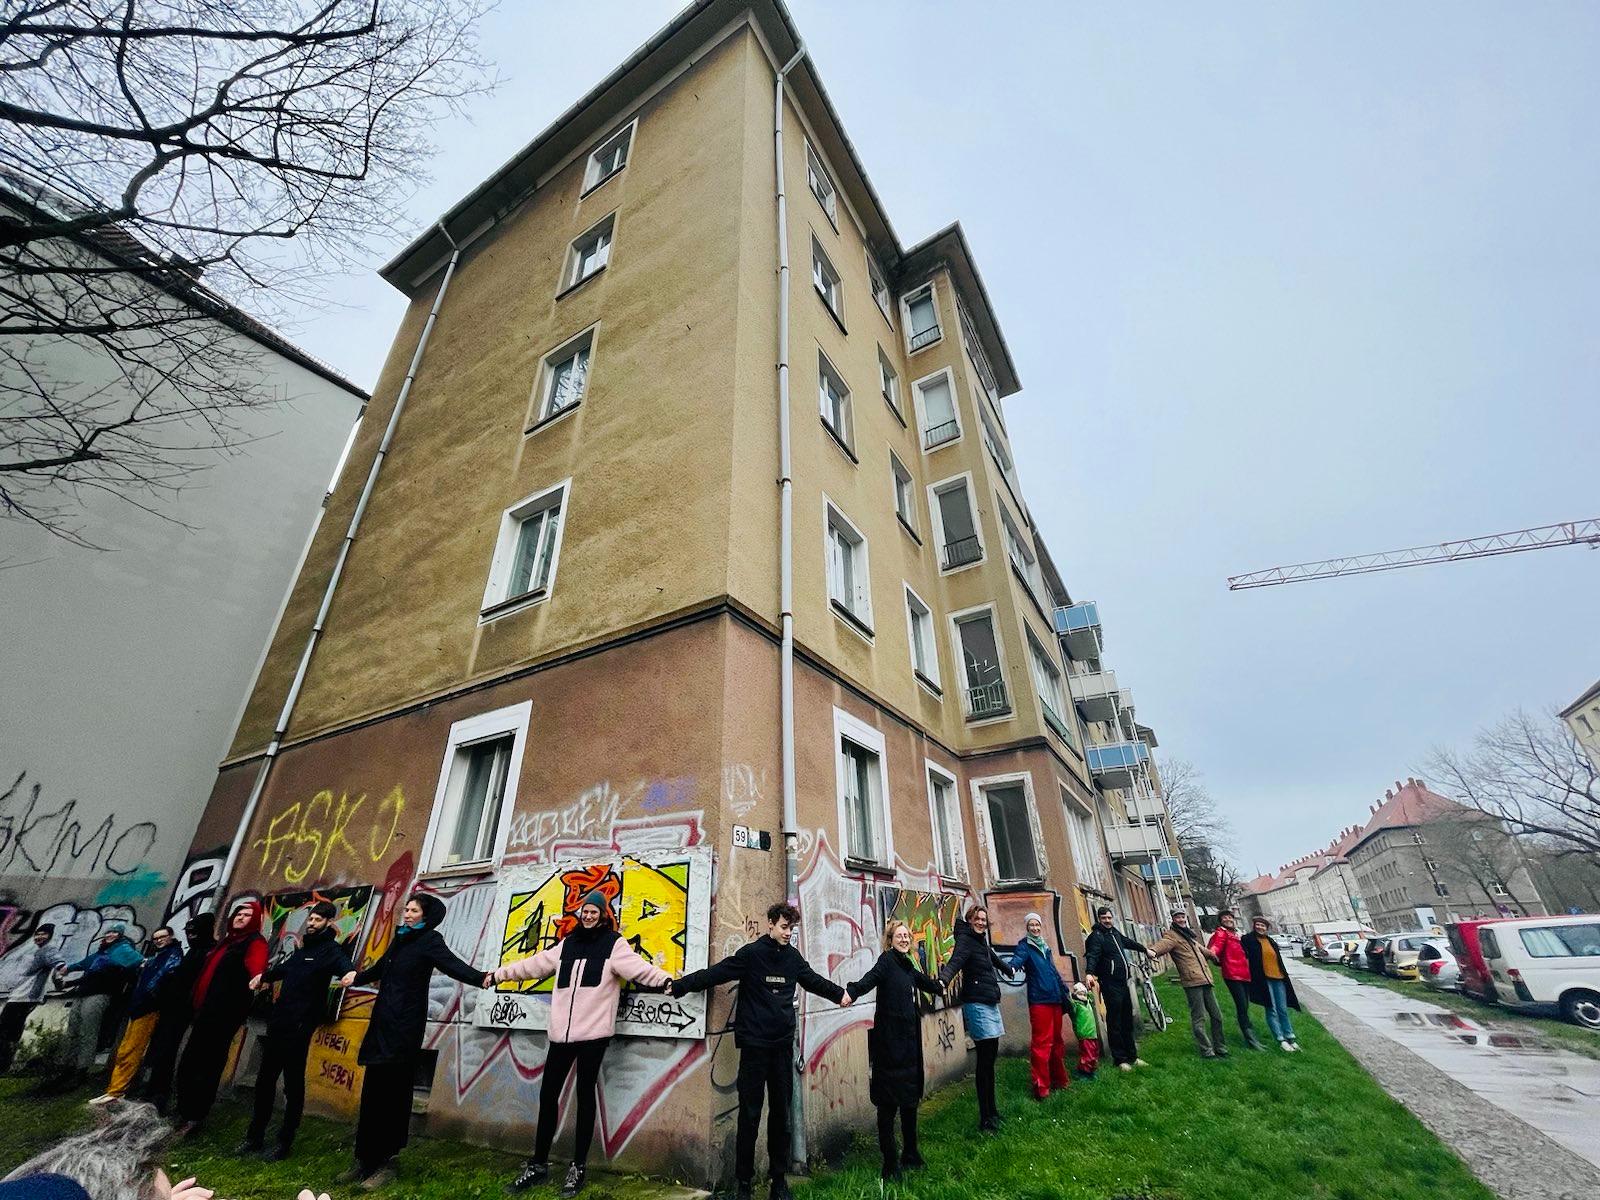   Petition »Südvorstadt für Alle« gestartet | Mieterinnen und Mieter fordern Mitspracherecht für ihre Wohnungen von der LWB  